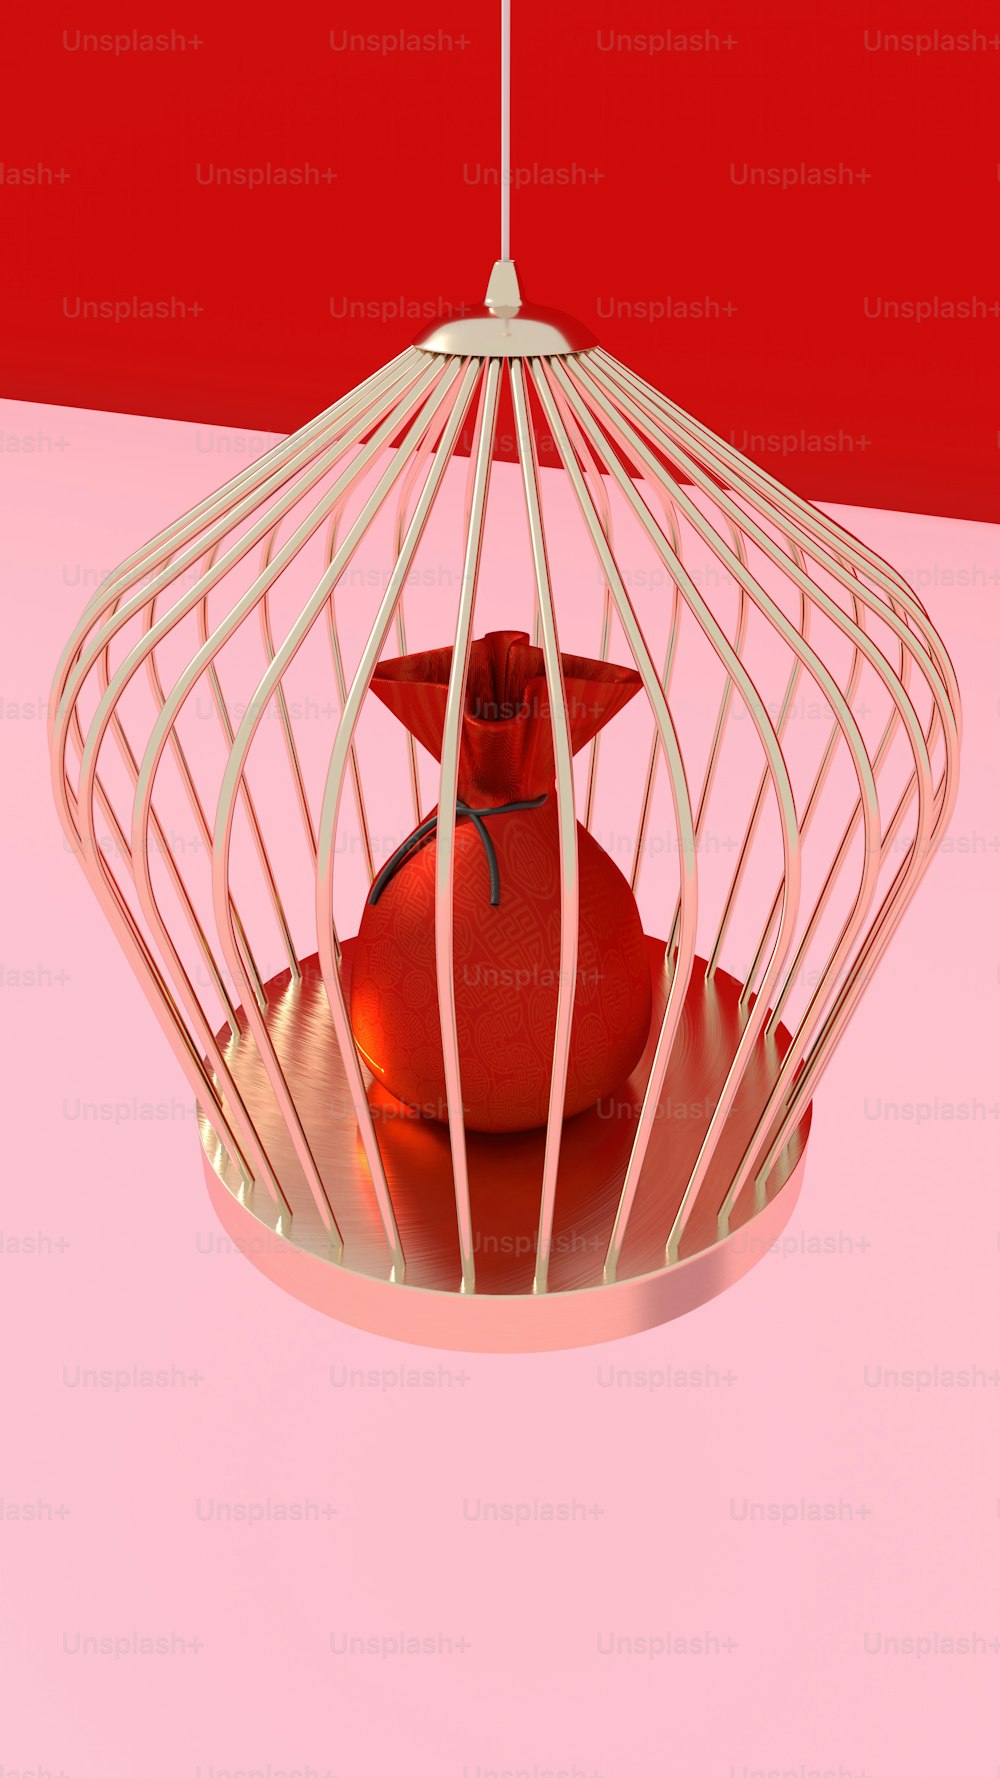 Un pájaro en una jaula sobre una superficie rosada